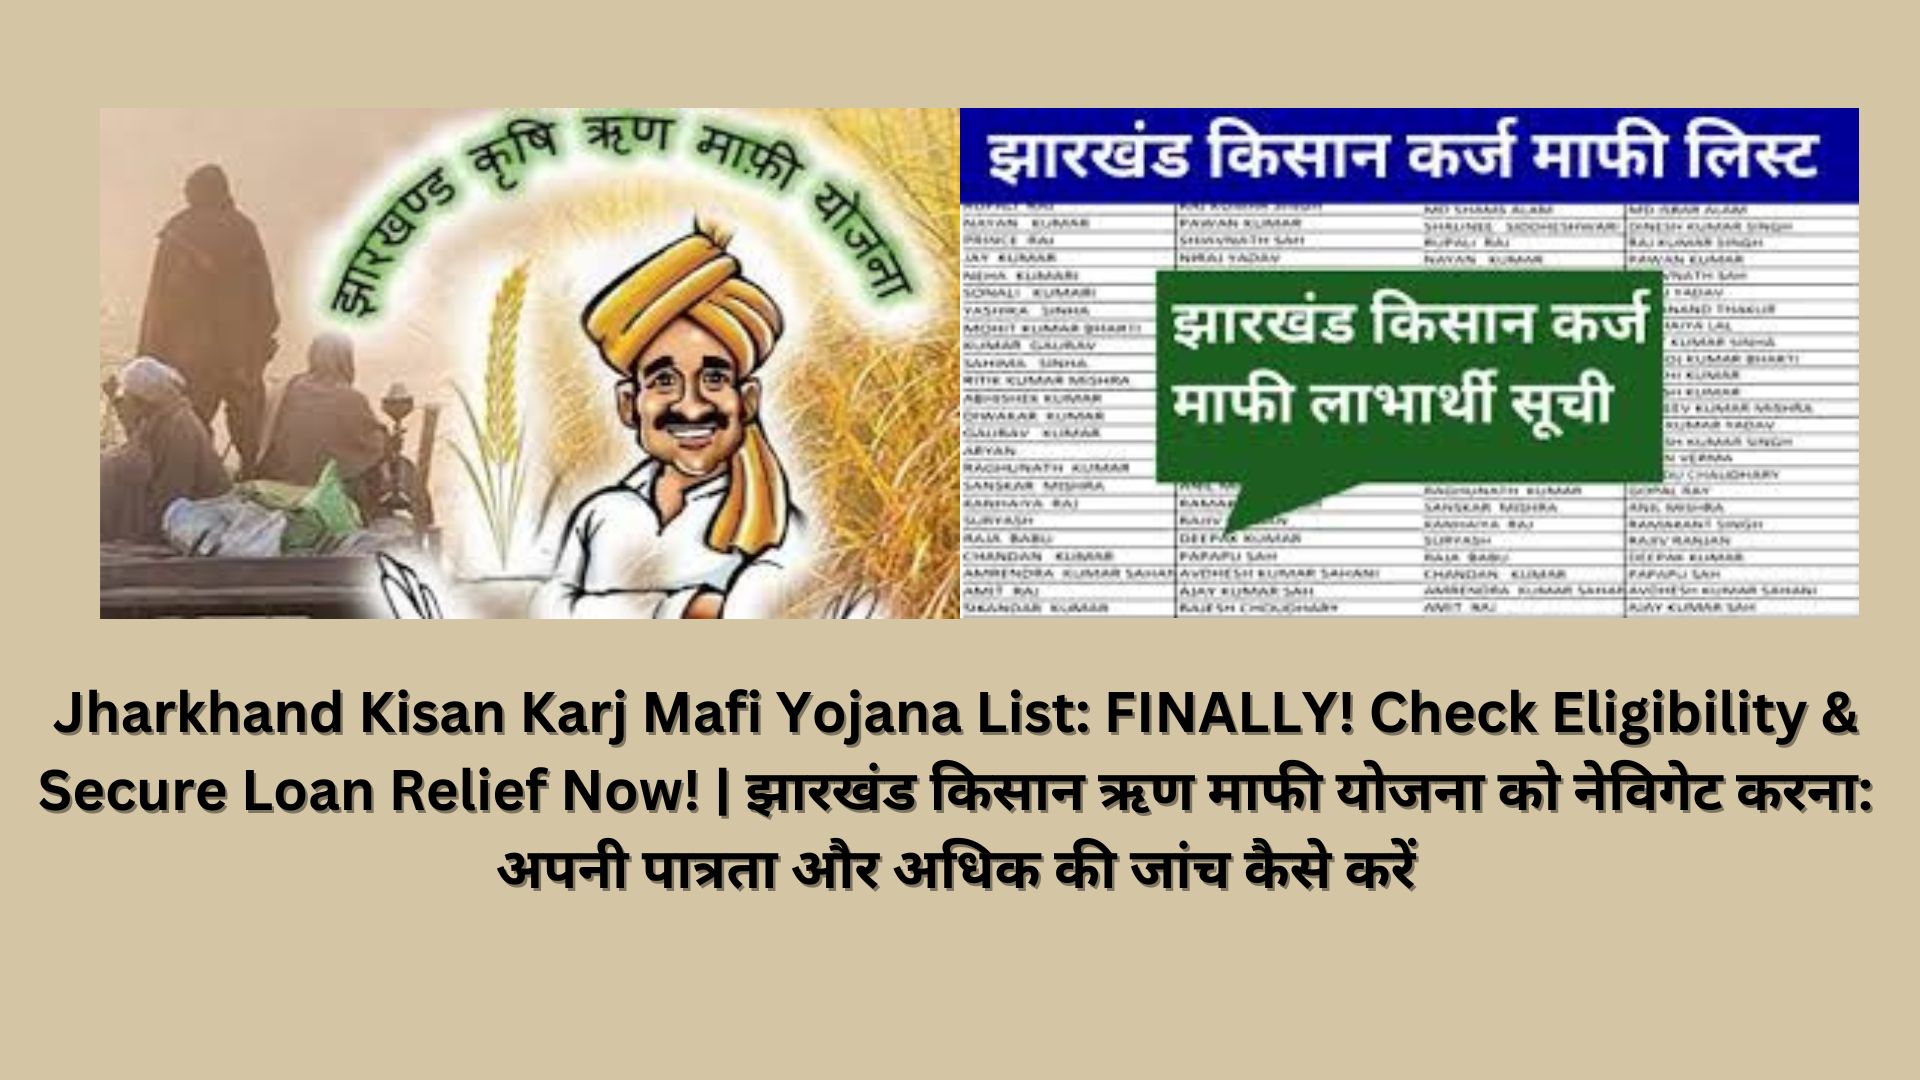 Jharkhand Kisan Karj Mafi Yojana List: FINALLY! Check Eligibility & Secure Loan Relief Now! | झारखंड किसान ऋण माफी योजना को नेविगेट करना: अपनी पात्रता और अधिक की जांच कैसे करें